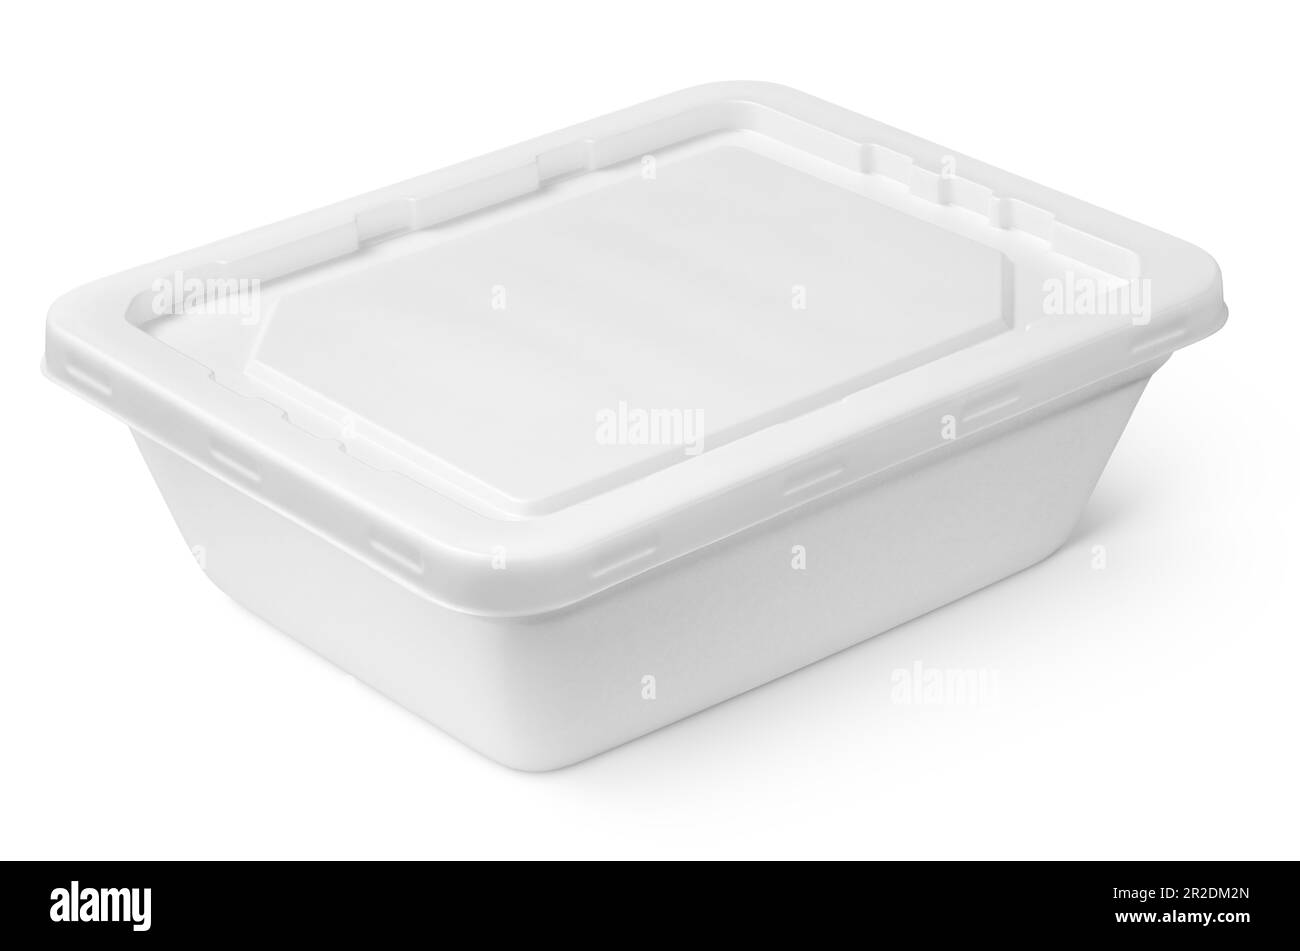 Conteneur alimentaire blanc fermé en polystyrène avec couvercle en plastique isolé sur fond blanc avec passe-cheveux Banque D'Images